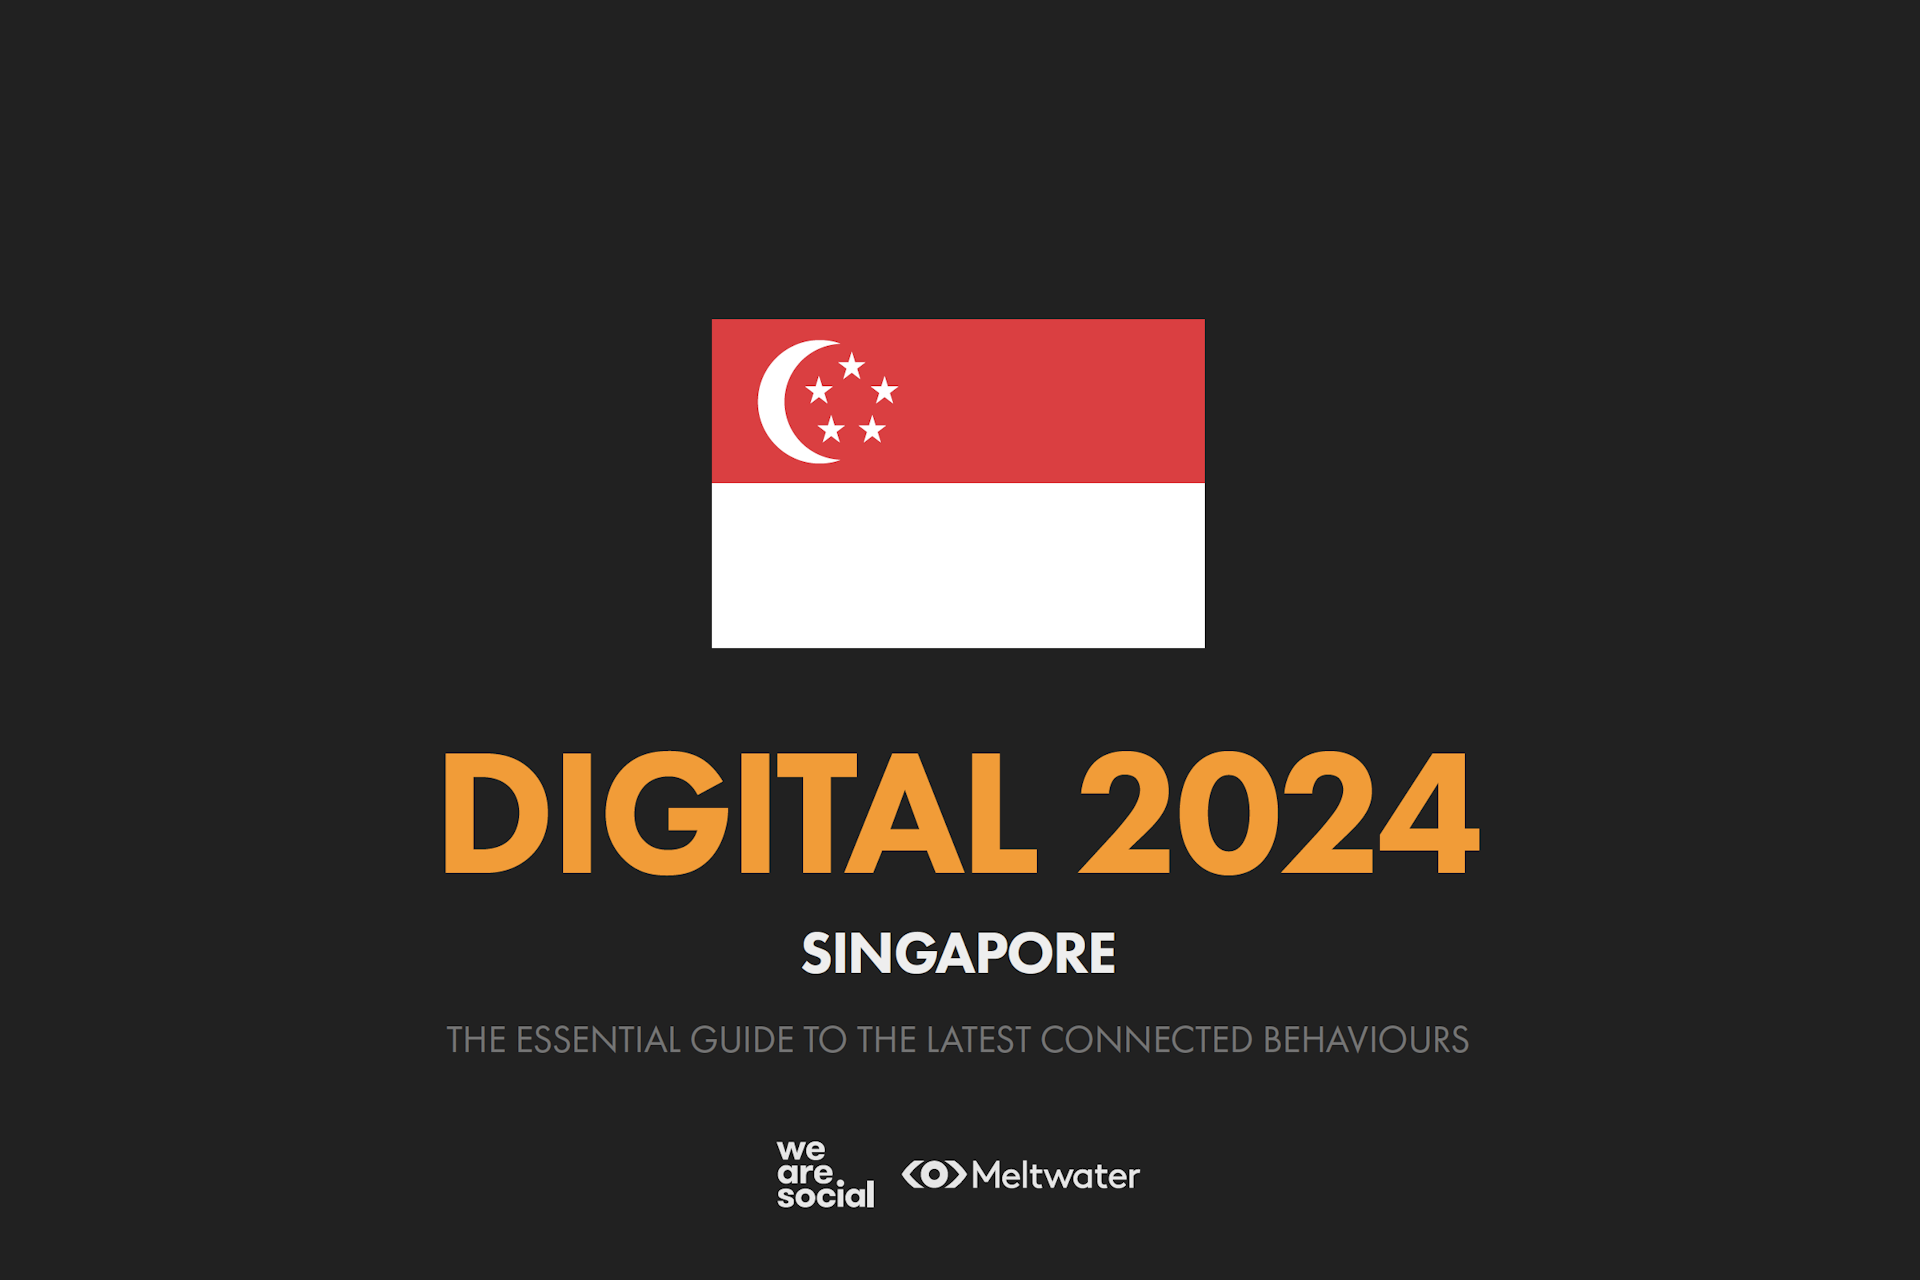 Global Digital Report 2024 for Singapore